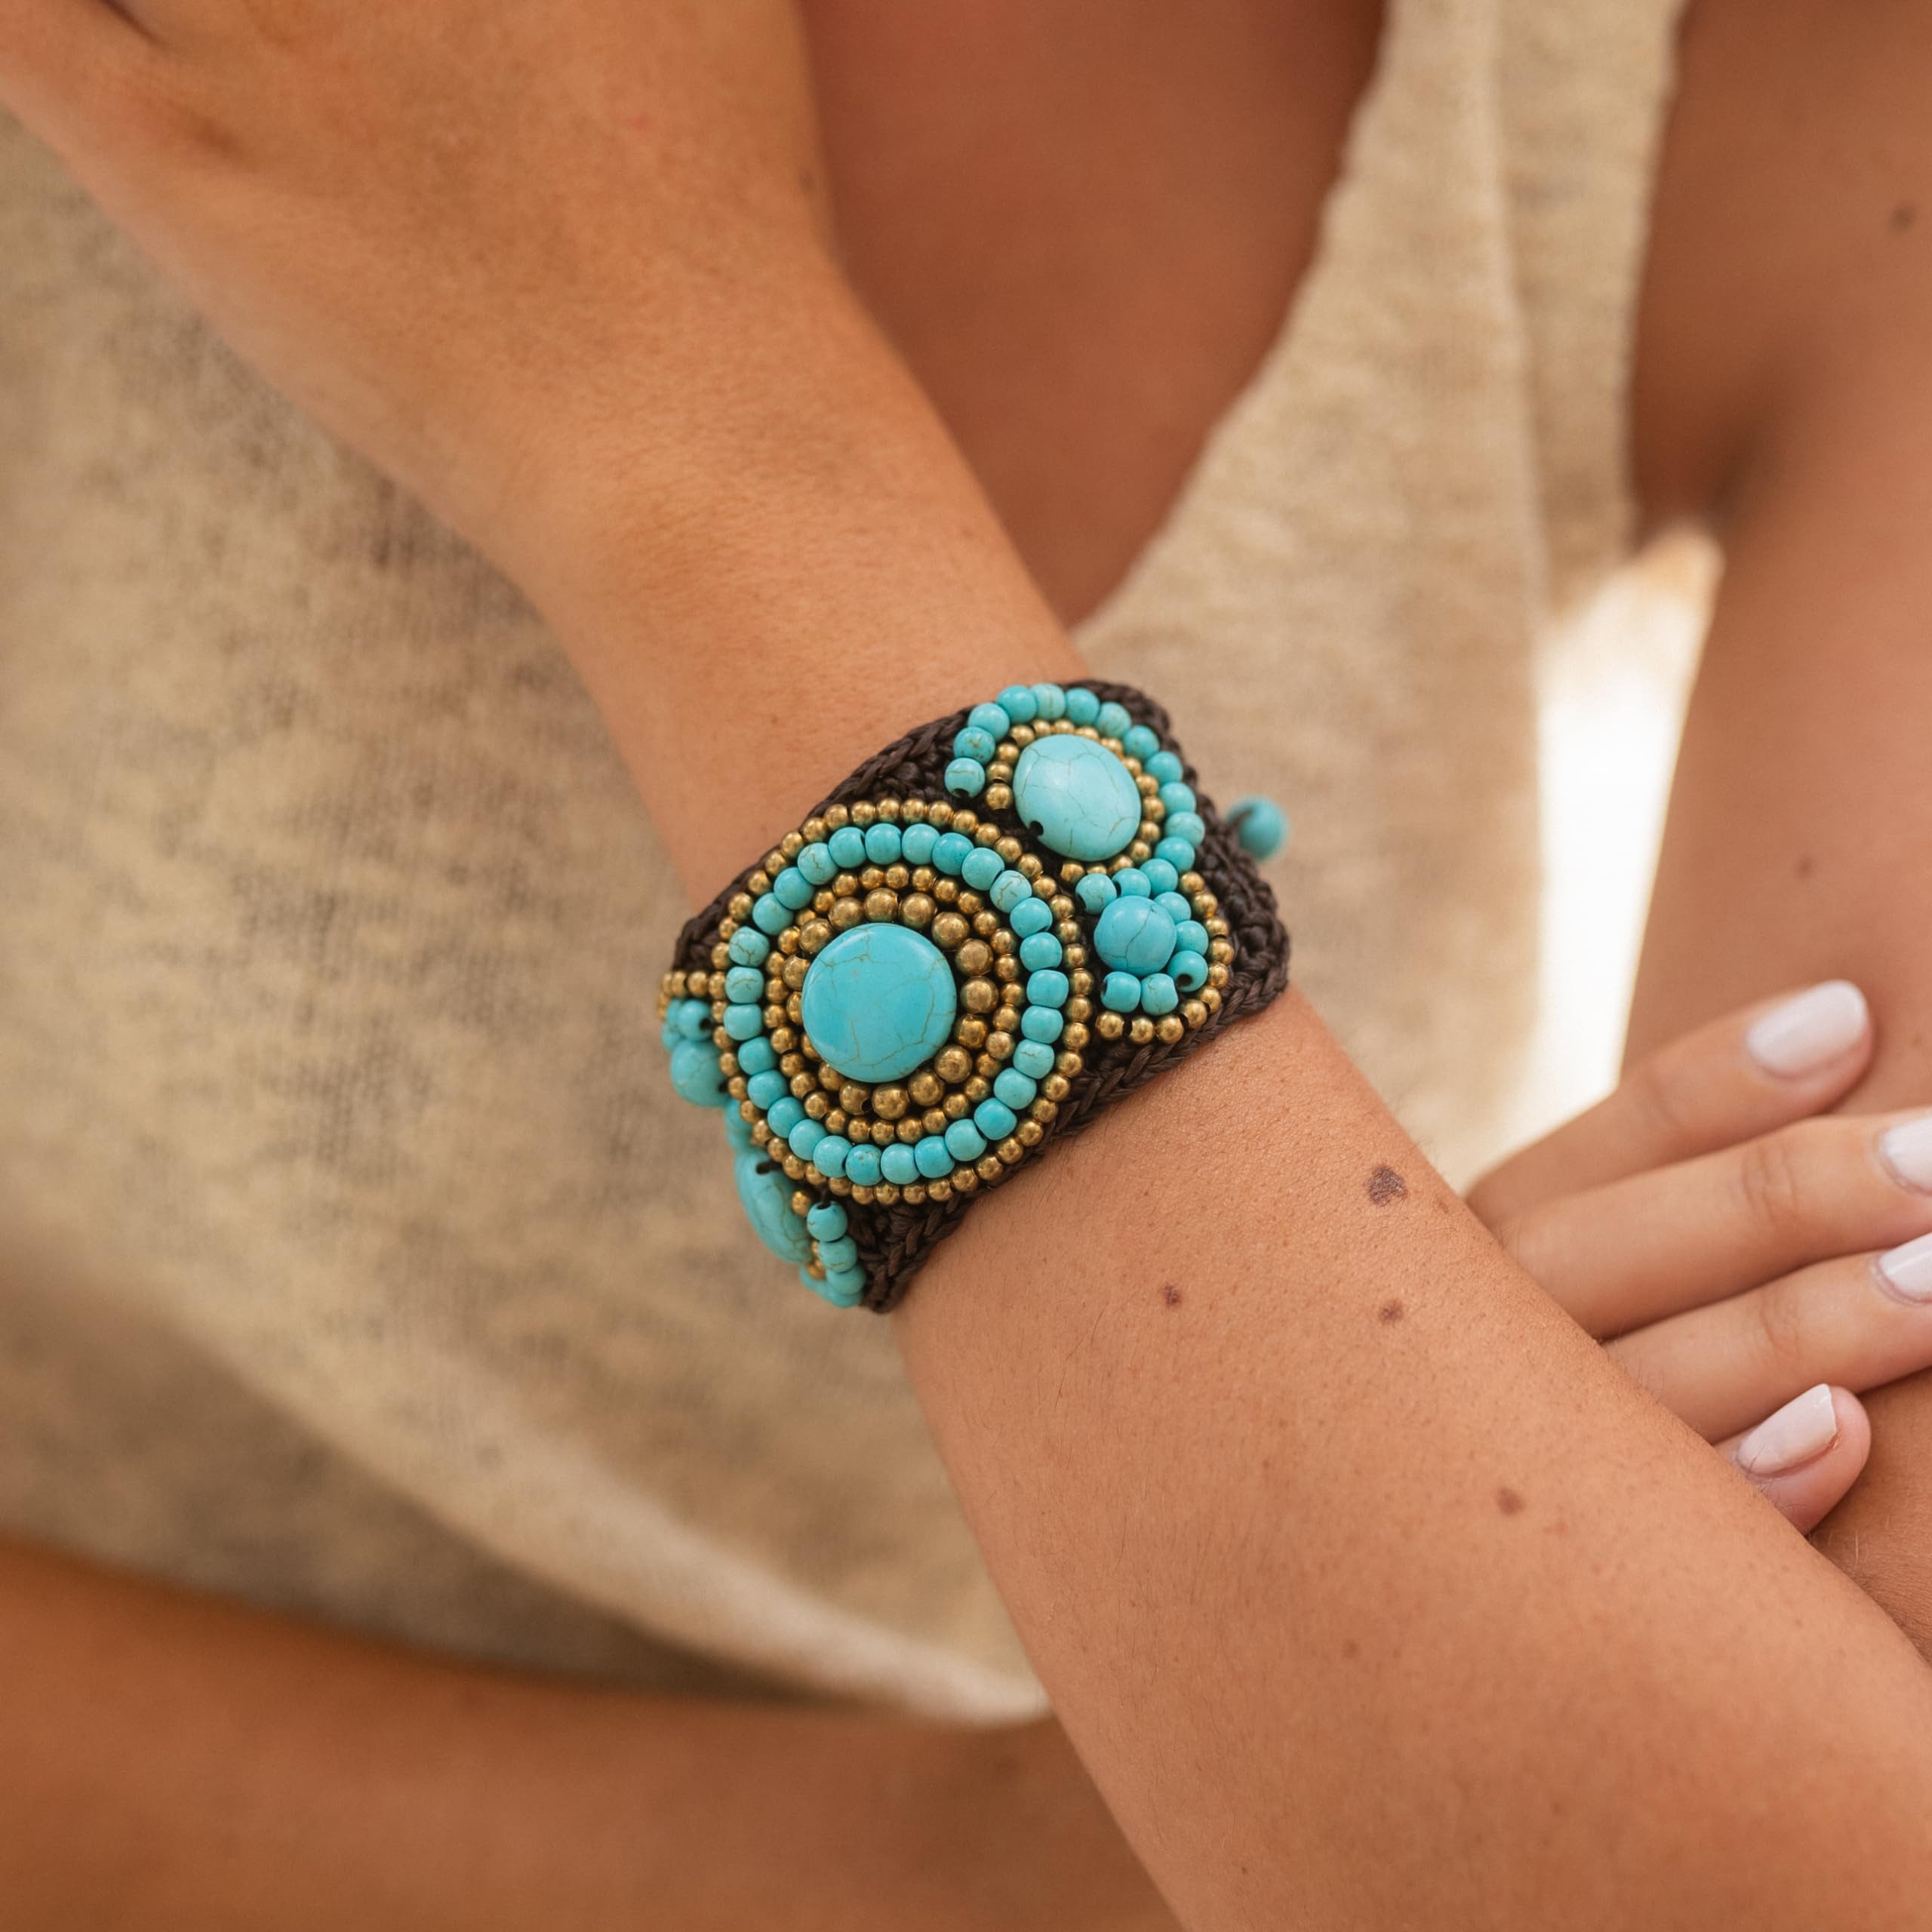 Made by Nami Armband Boho Damen Handgemacht mit Türkisen und Goldenen Perlen, Hippie Accessoires Indischer Schmuck 16 + 4 cm Lang